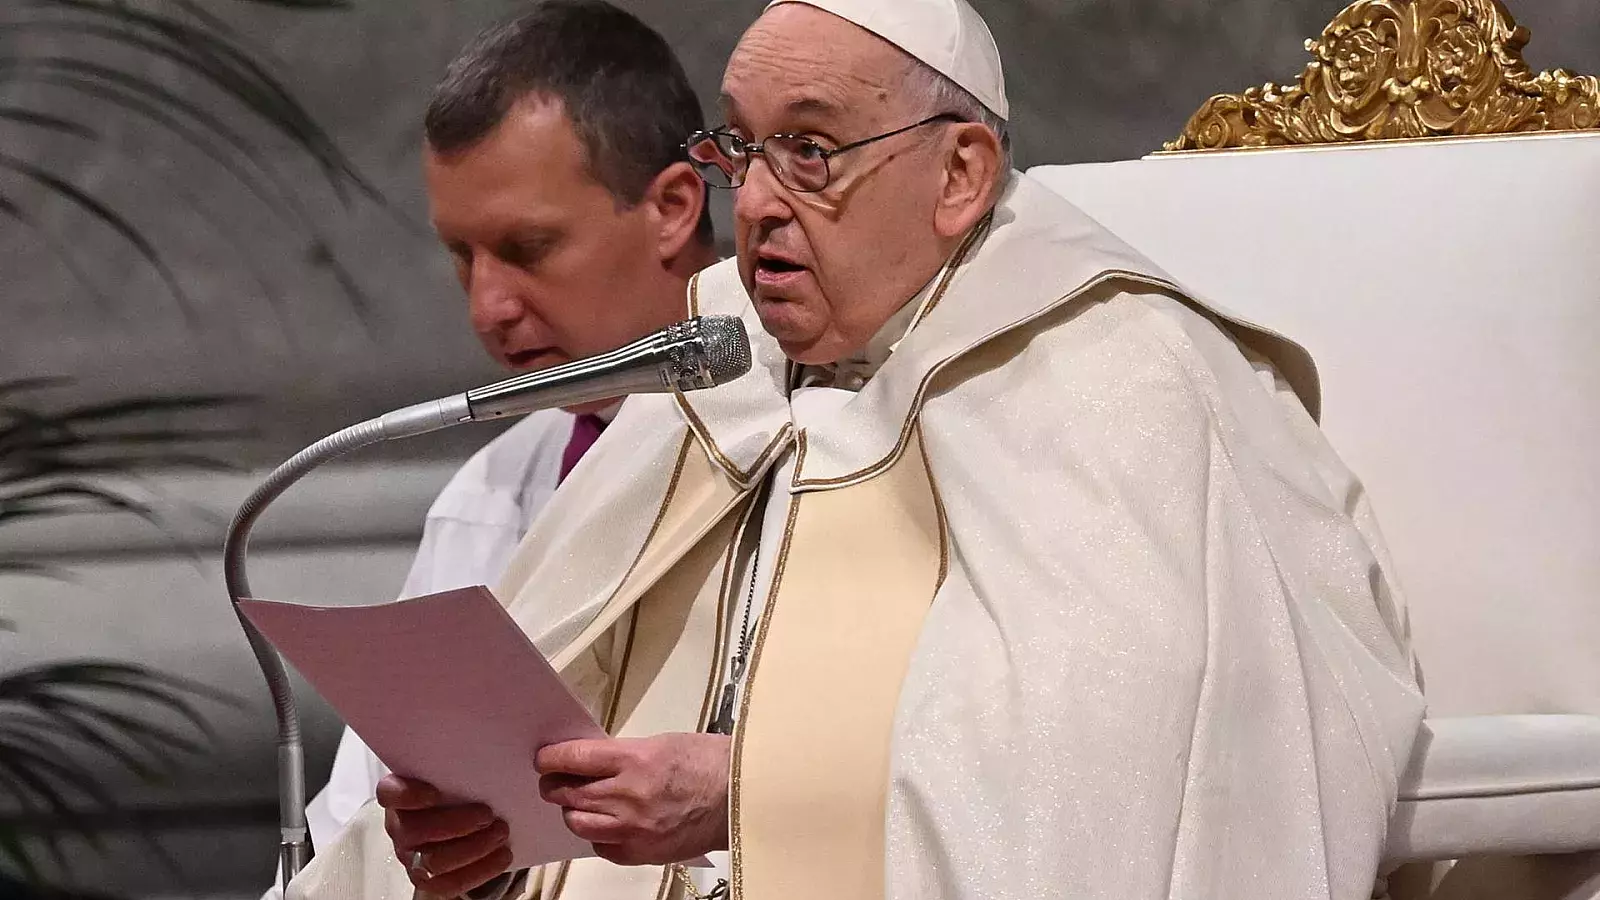 El Papa Francisco permite que se den bendiciones a parejas del mismo sexo